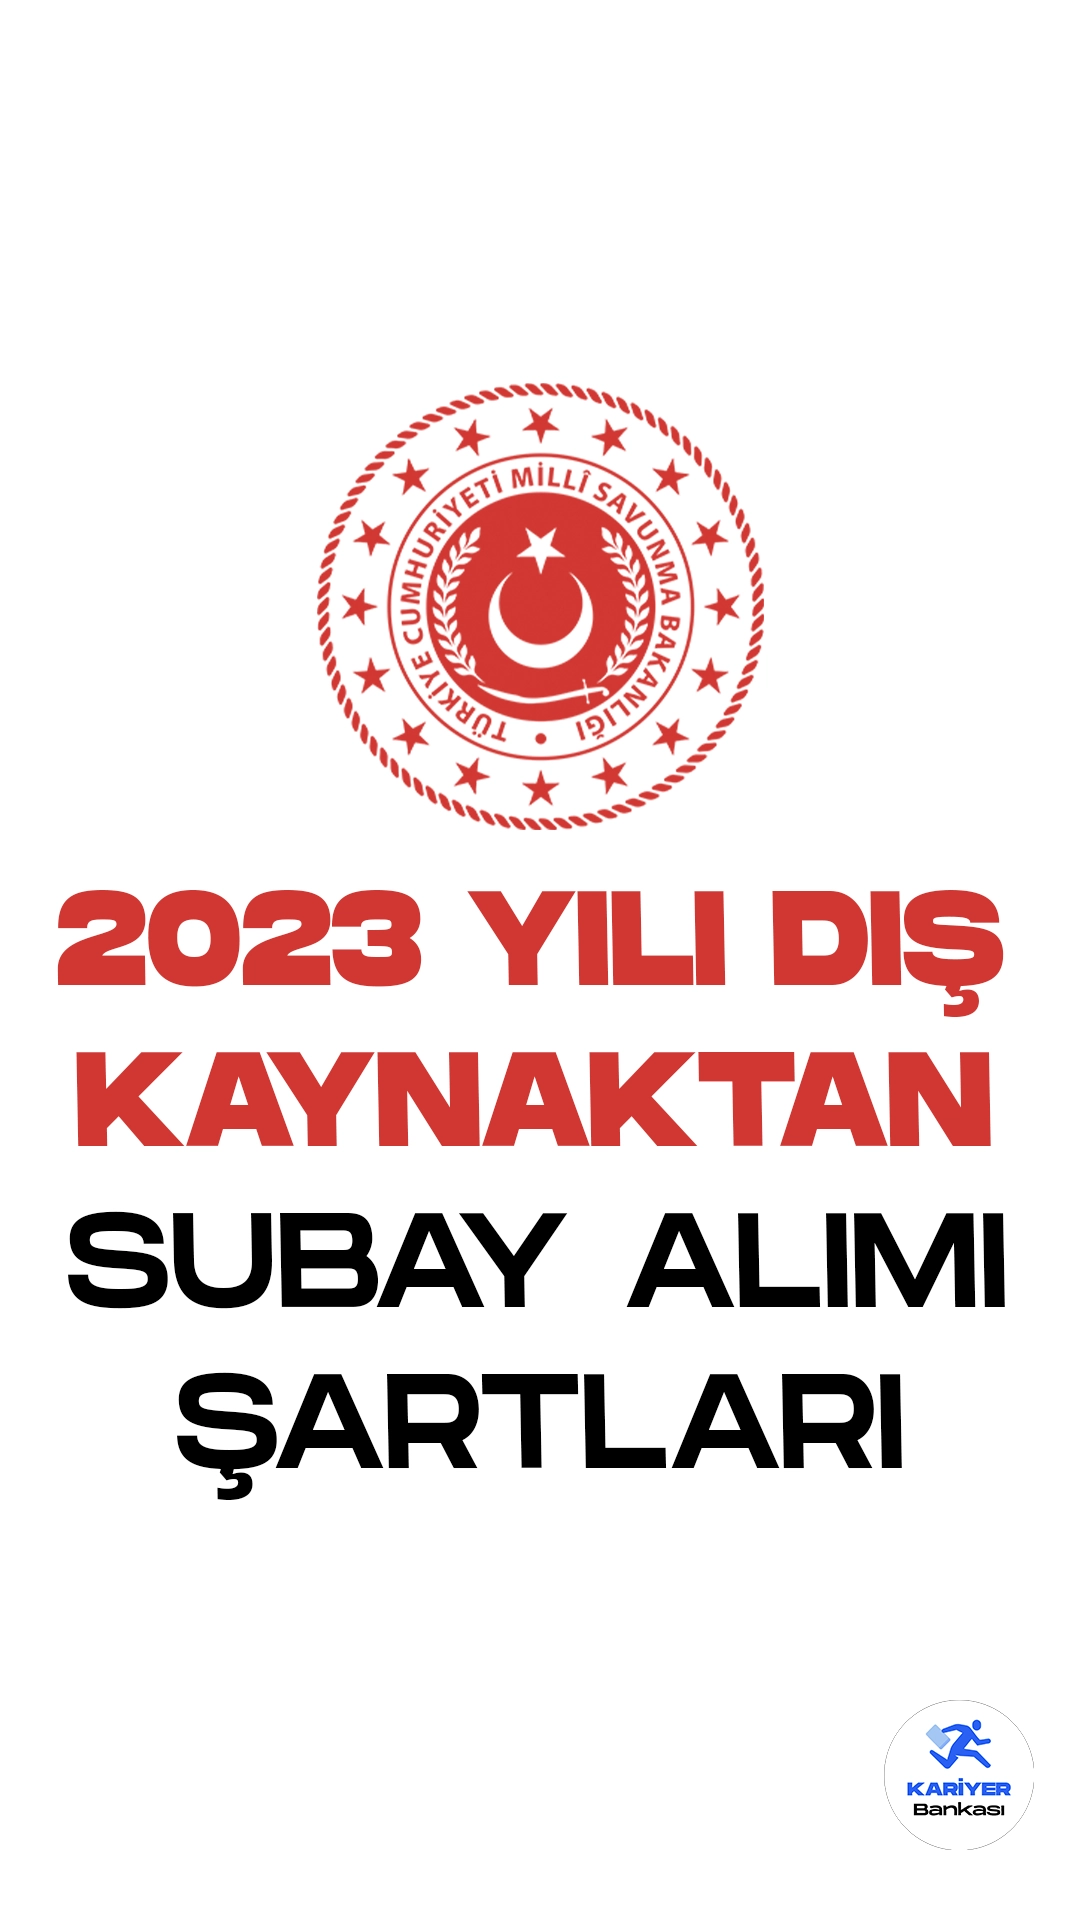 Türk Silahlı Kuvvetleri (TSK) 2023 yılı dış kaynaktan subay alımı başvuruları devam ediyor. Başvuru şartları ve başvuru sayfasına dair detayların hepsi bu haberimizde yer alıyor.